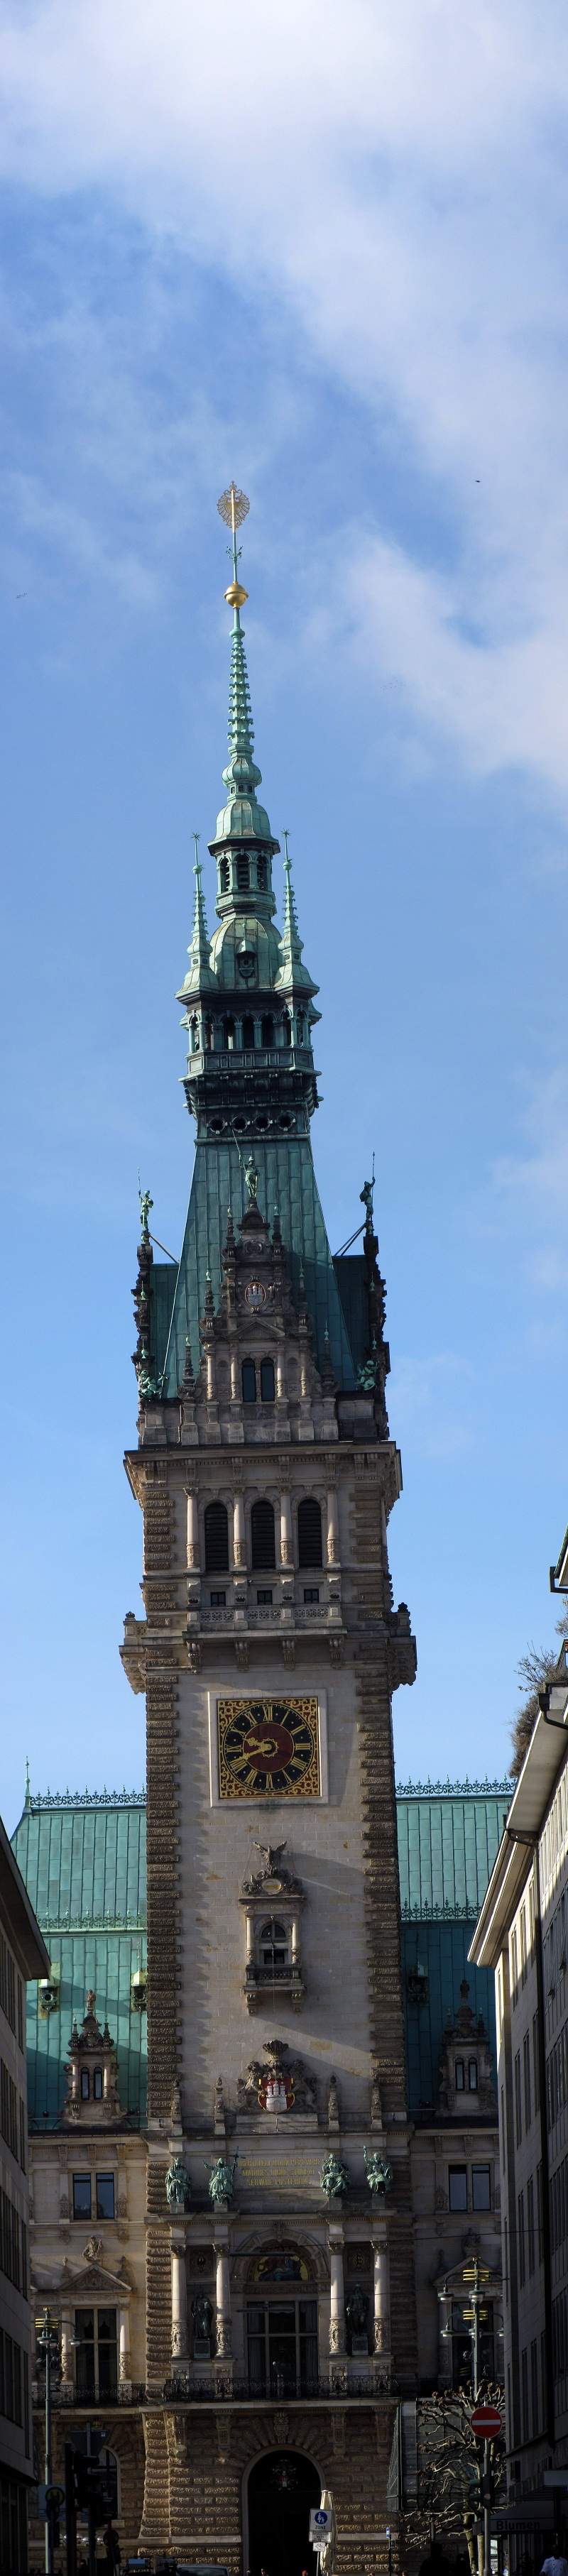 Hamburg - Rathausturm